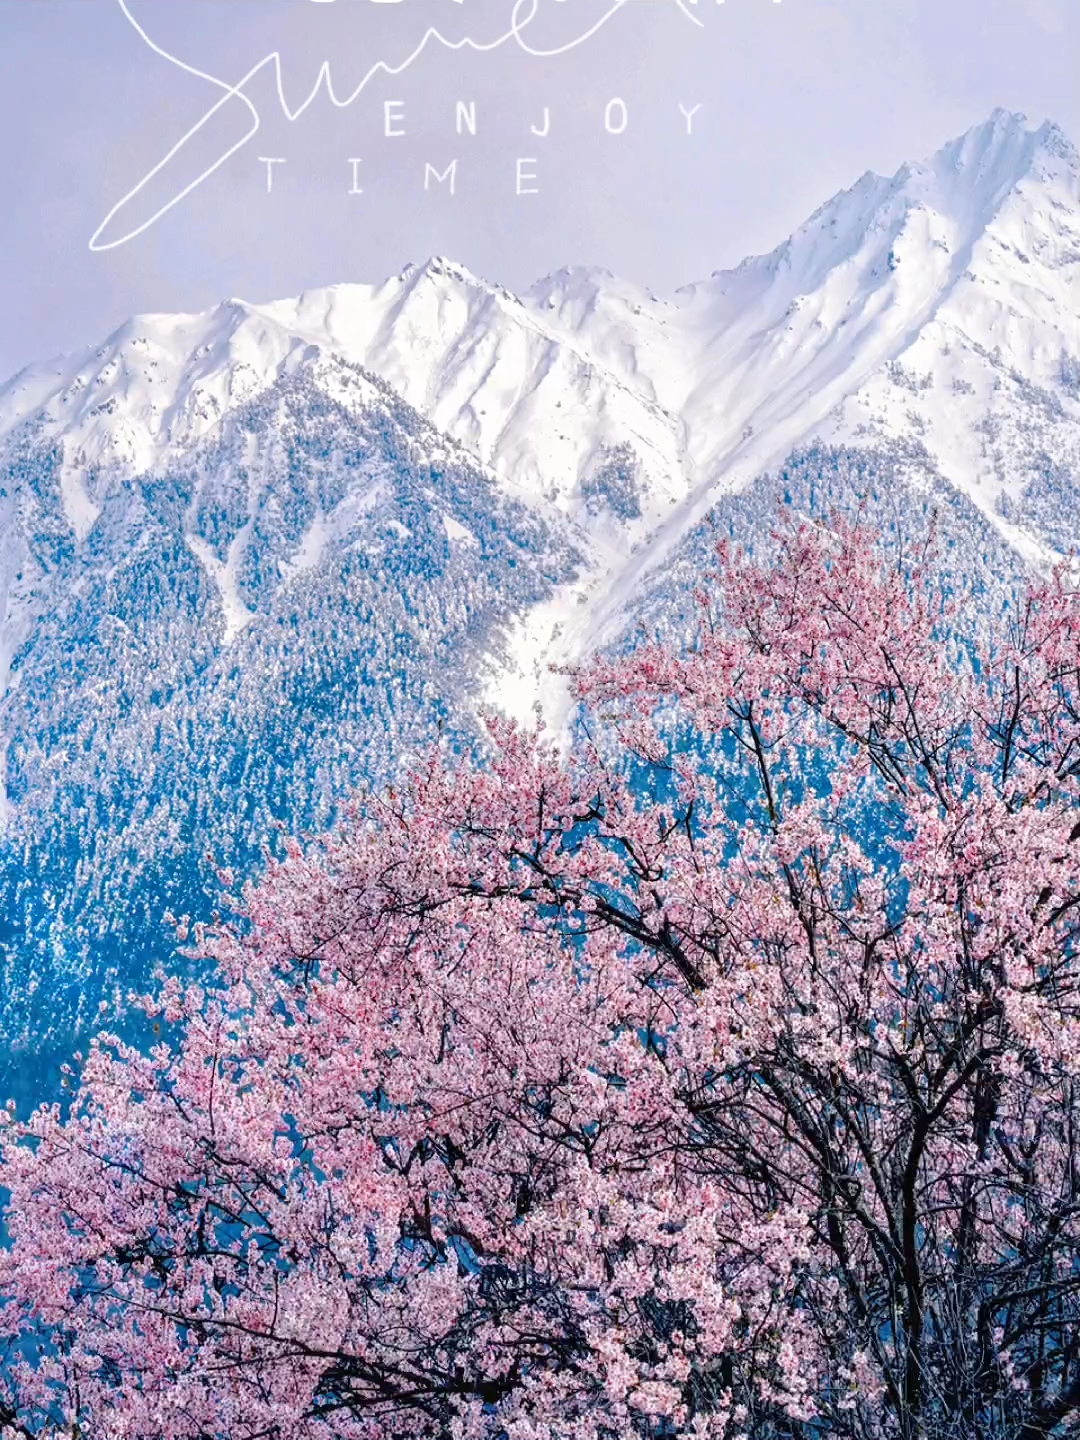 不是林芝❗️是西藏雪山下最后的桃源秘境～|||本来以为林芝的桃花已经很美了 但直到我去了西藏这个更为